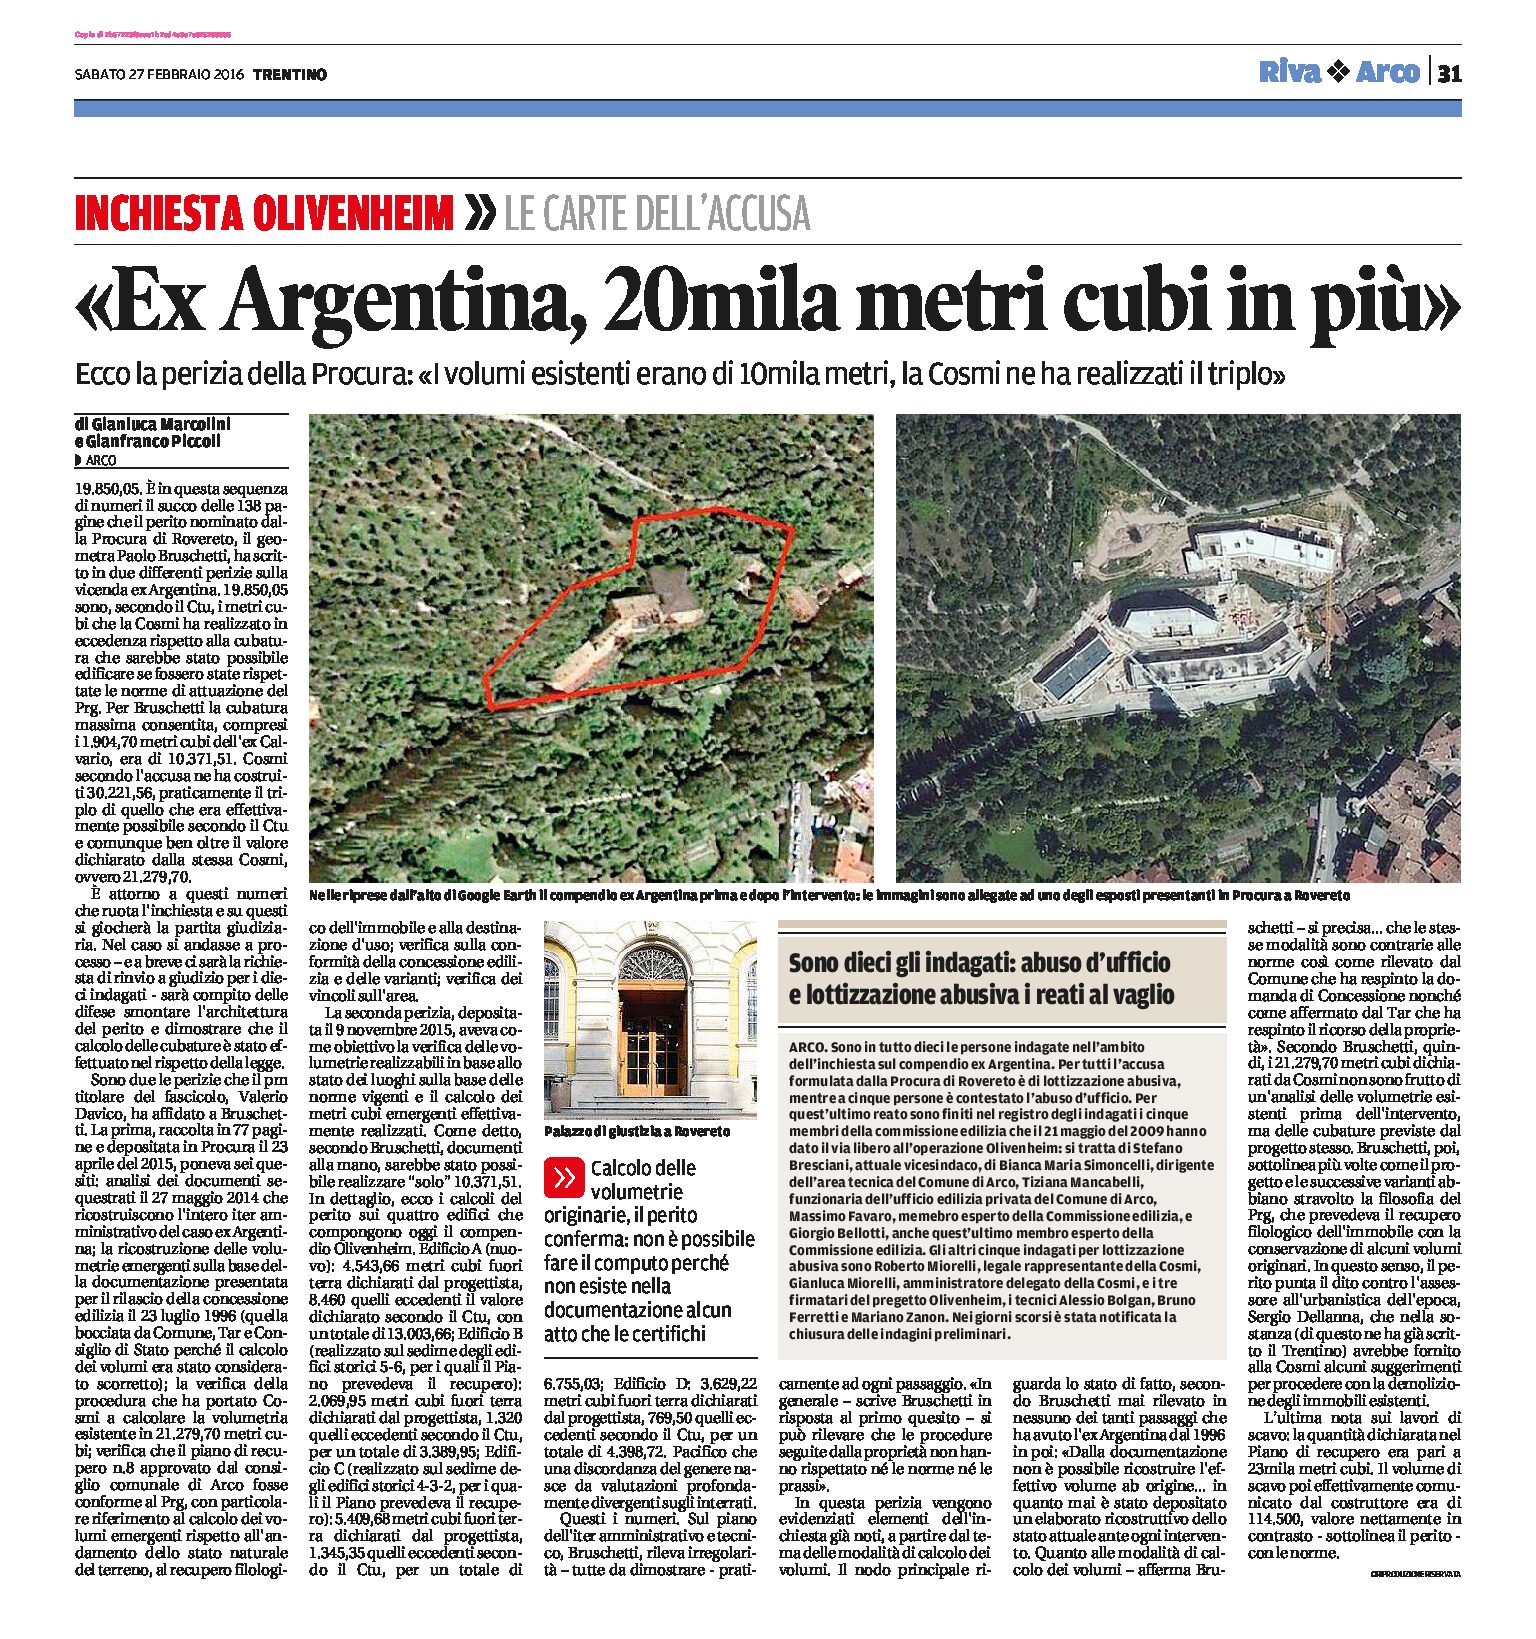 Arco, ex Argentina. Ecco la perizia della Procura: 20mila metri cubi in più